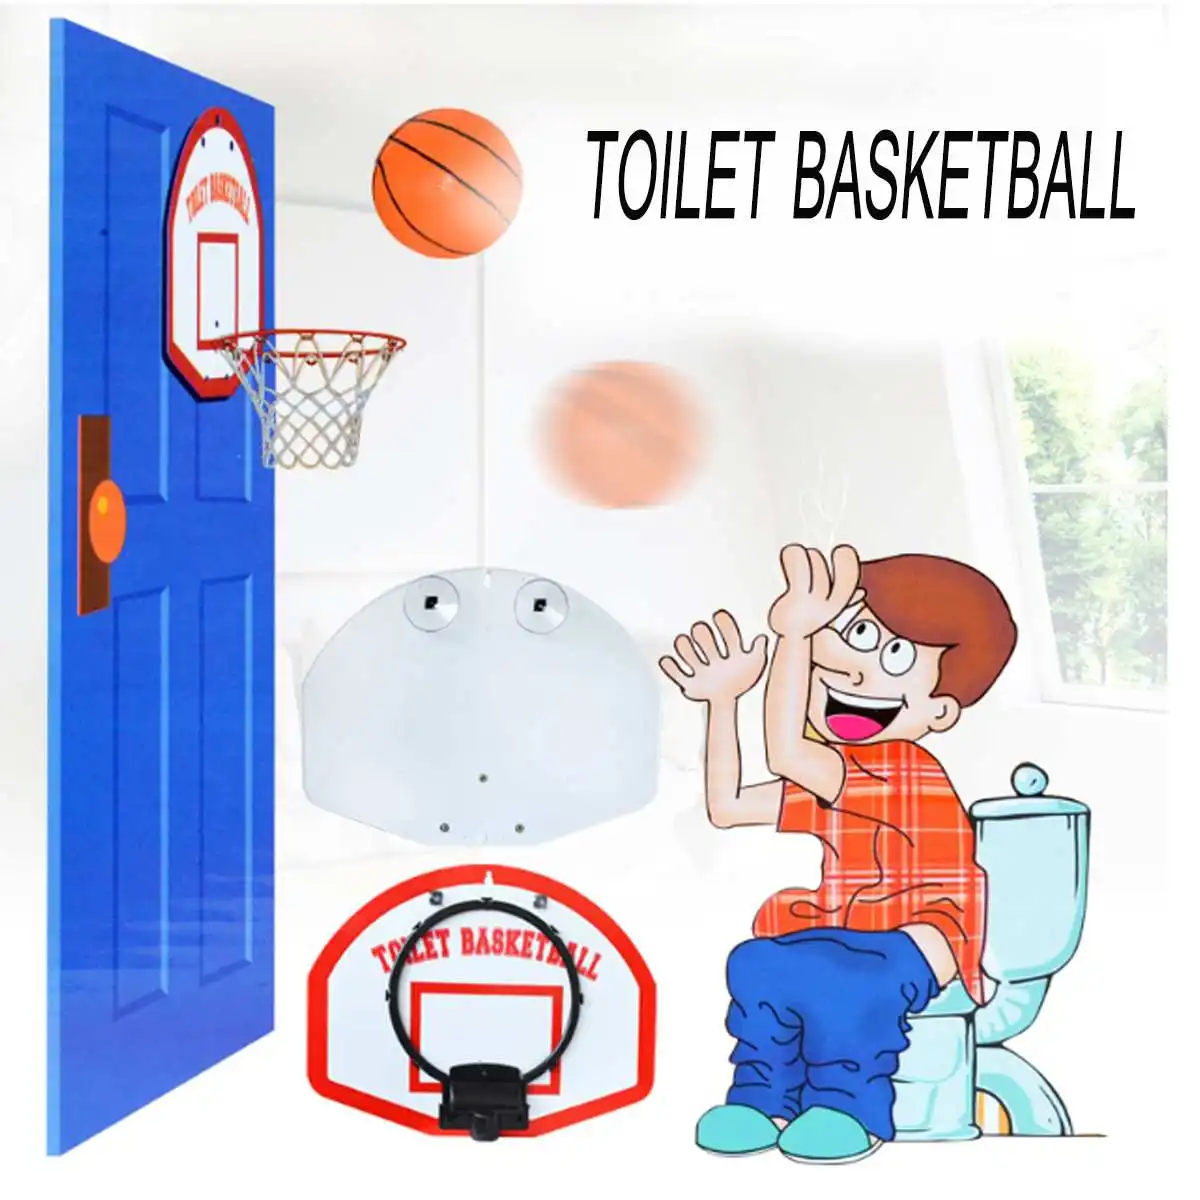 المرحاض كرة السلة مجموعات 1 سلة + 3 كرات السلة الأطفال حمام لعبة متعة المرحاض كرة السلة لعبة الكبار الاطفال لعبة الرياضية داخلي التدريب